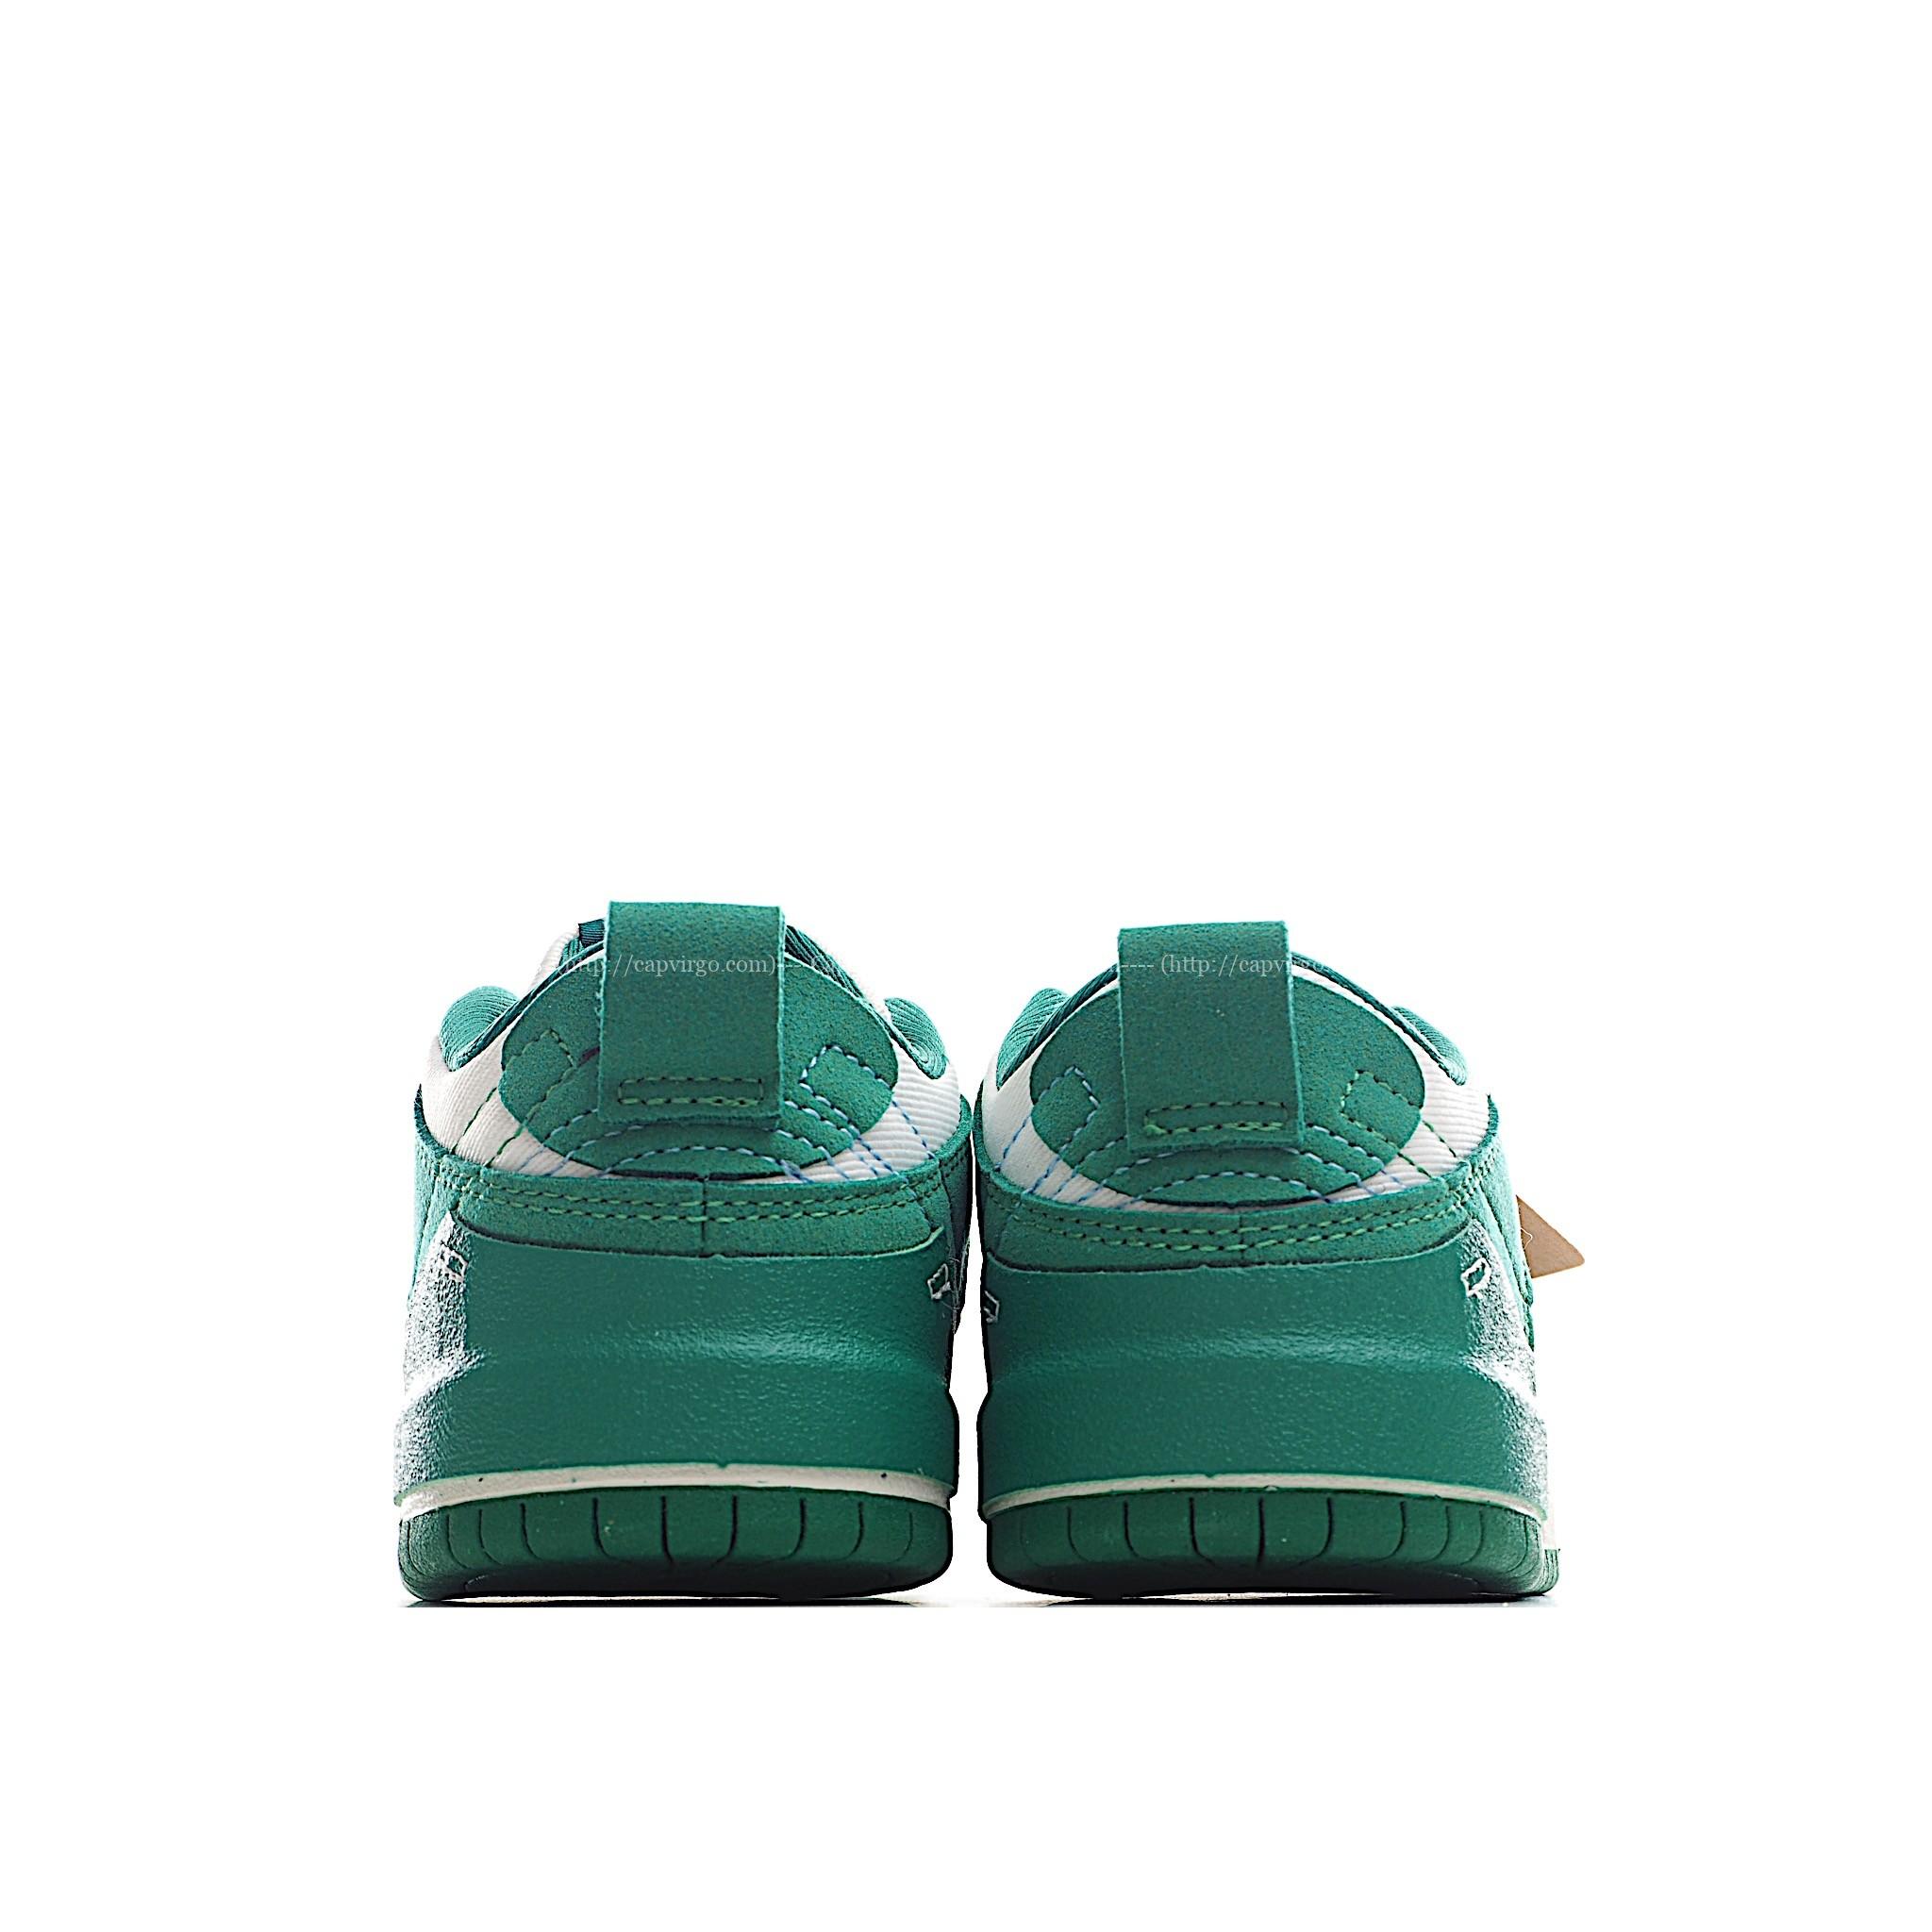 Giày trẻ em Nike Dunk Low Disrupt 2 màu xanh lá cây